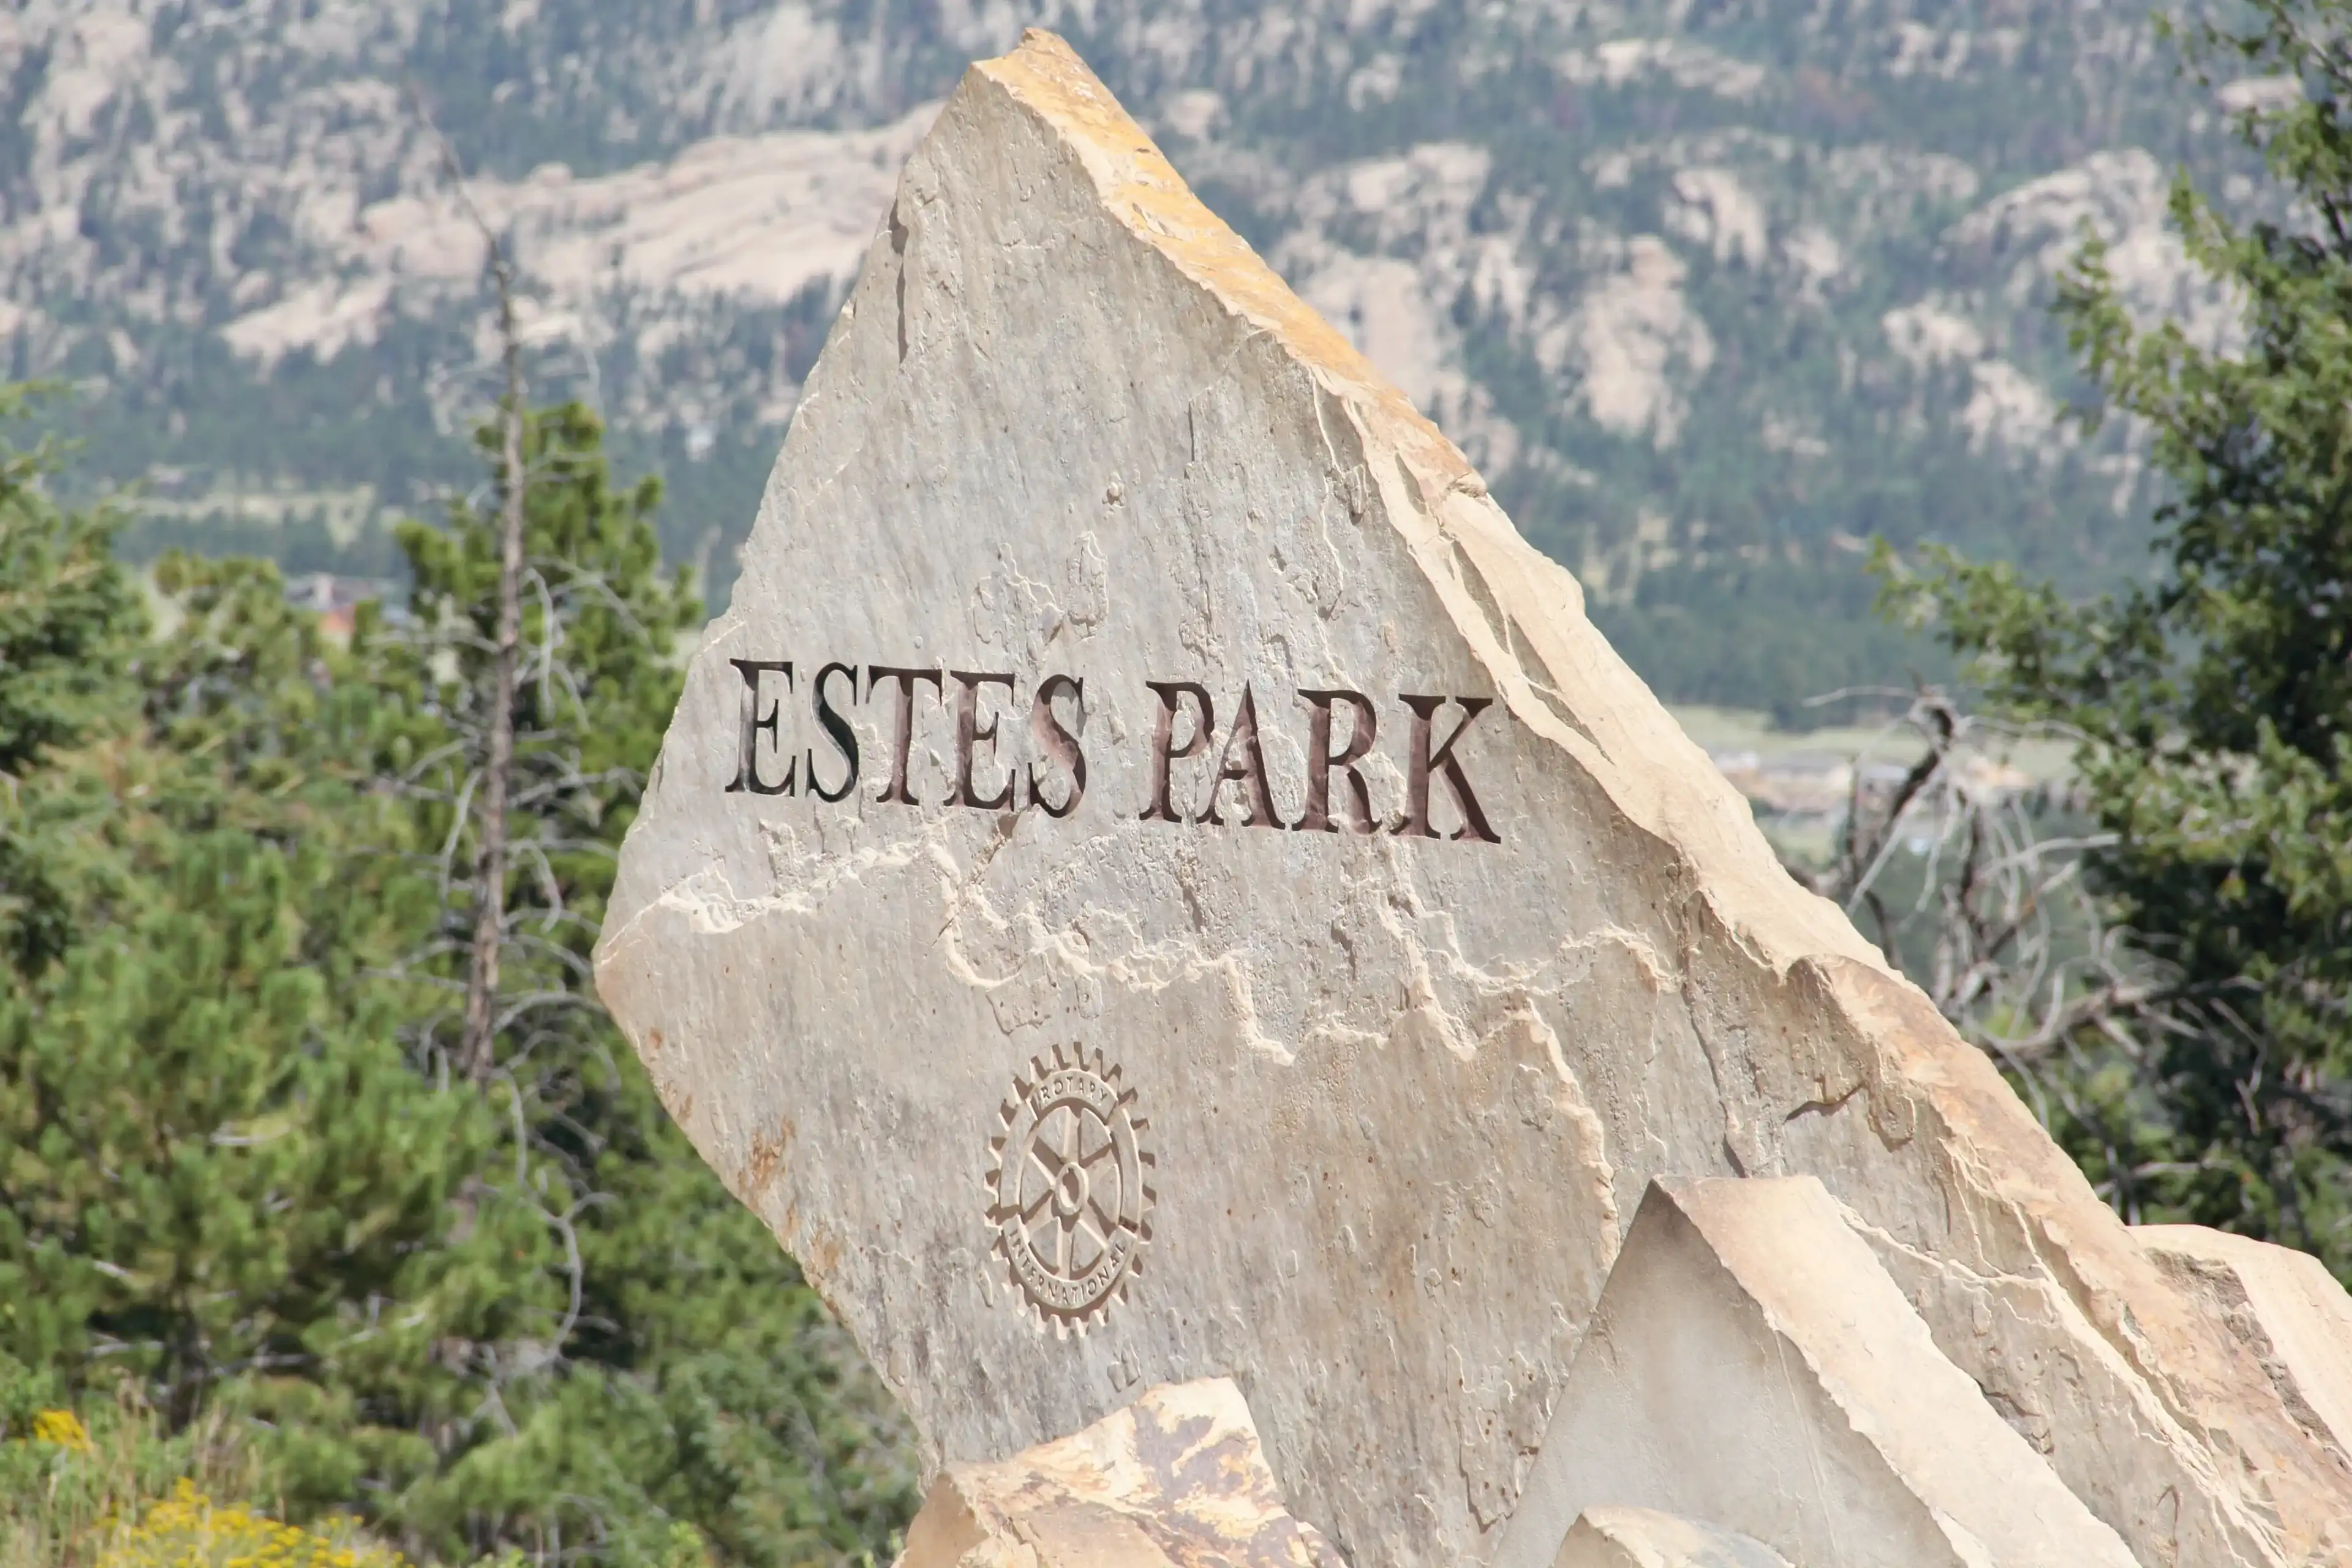 Best Estes Park hotels. Cheap hotels in Estes Park, Colorado, United States